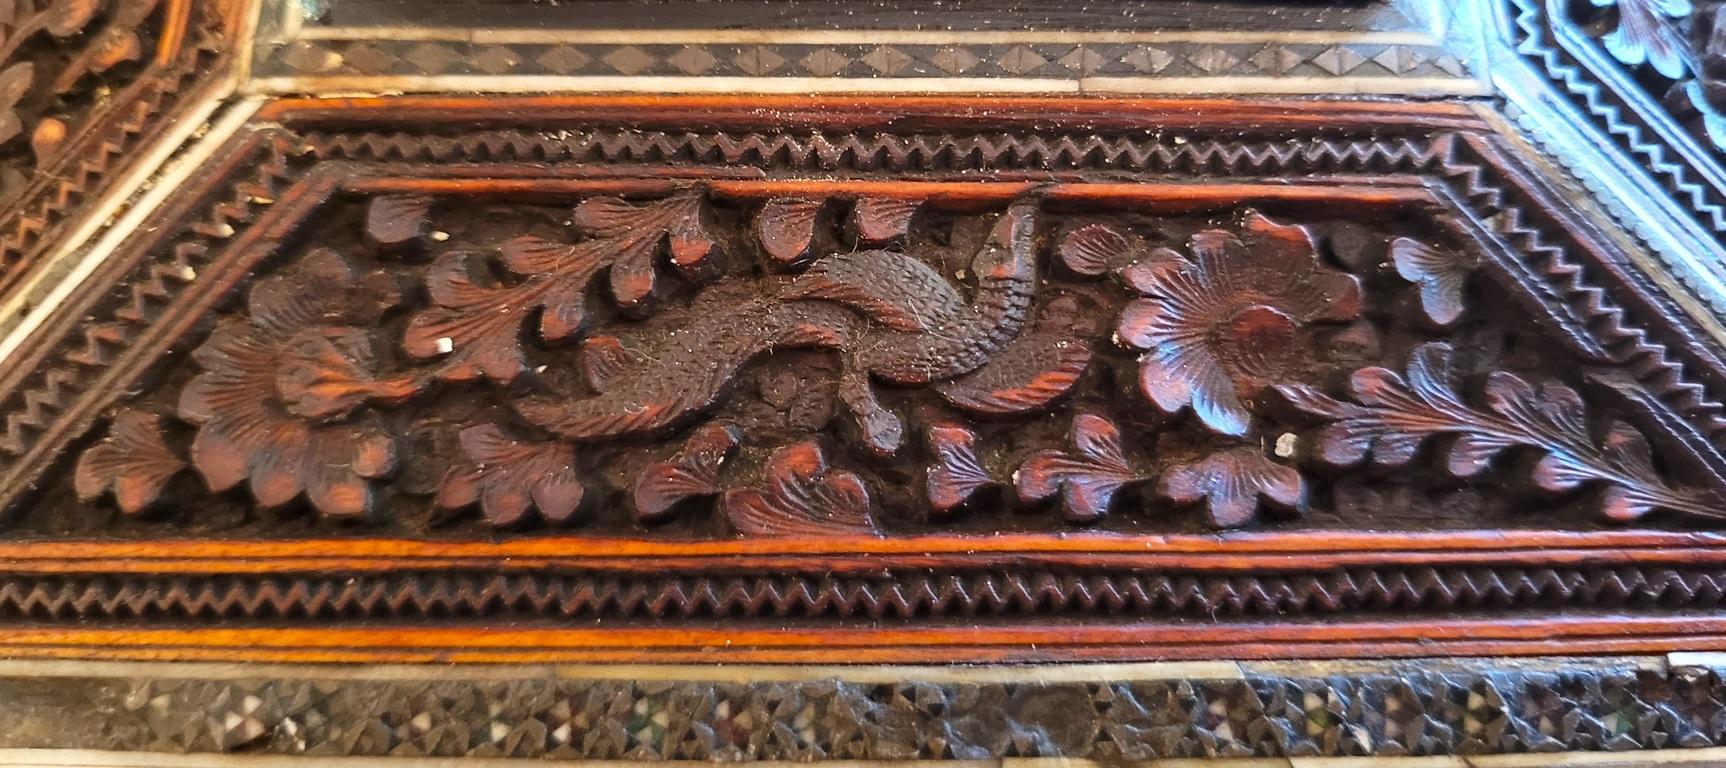 PRÉSENTE une ravissante boîte à couture anglo-indienne du 19e siècle en bois de padouk hautement sculpté et incrusté de mosaïque de Sadeli.

Fabriqué à Bombay, Inde, vers 1880.

La boîte est en bois de santal et comporte sur toutes ses faces des